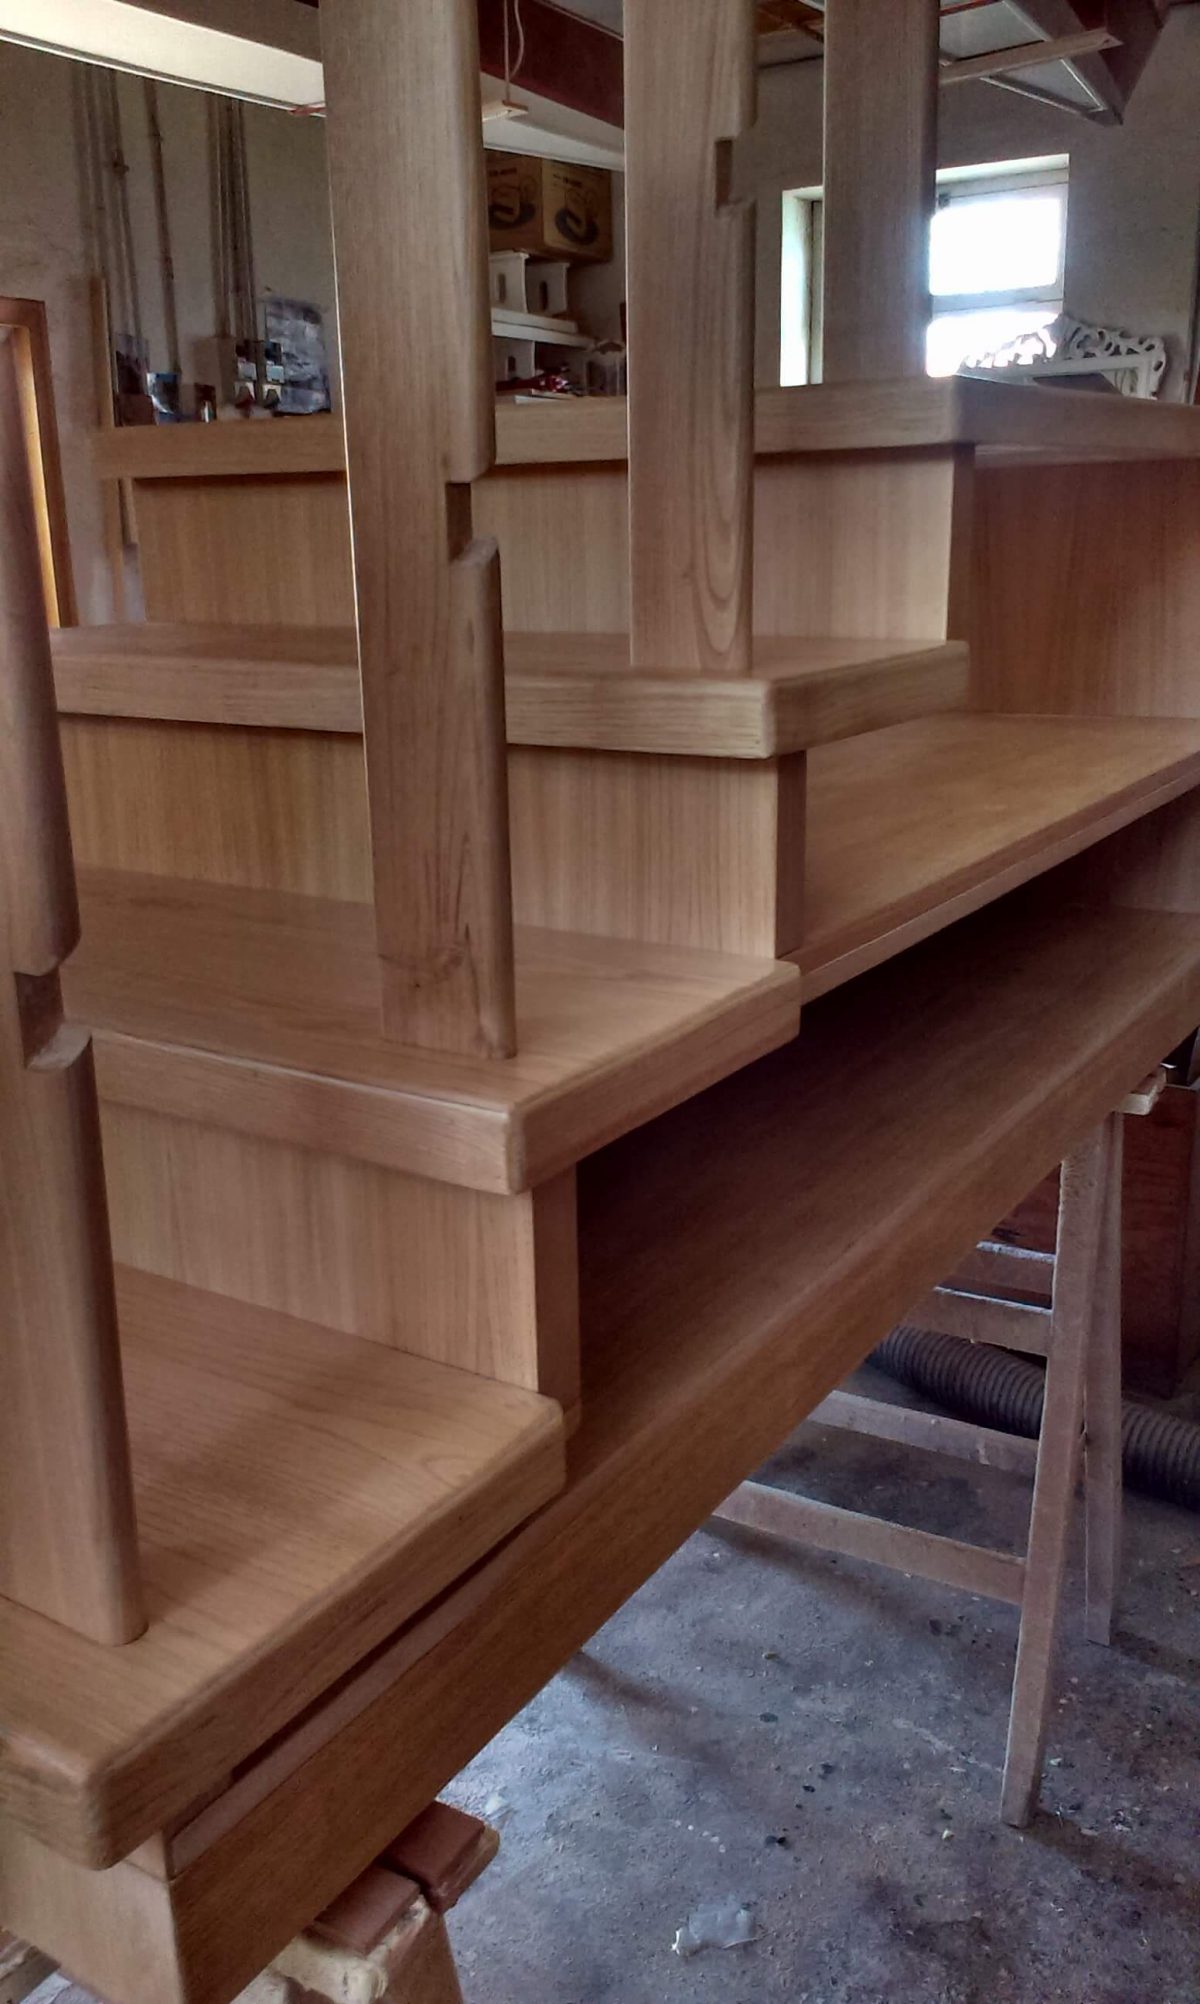 Lounge Bookshelves 4 step stair in progress Detail